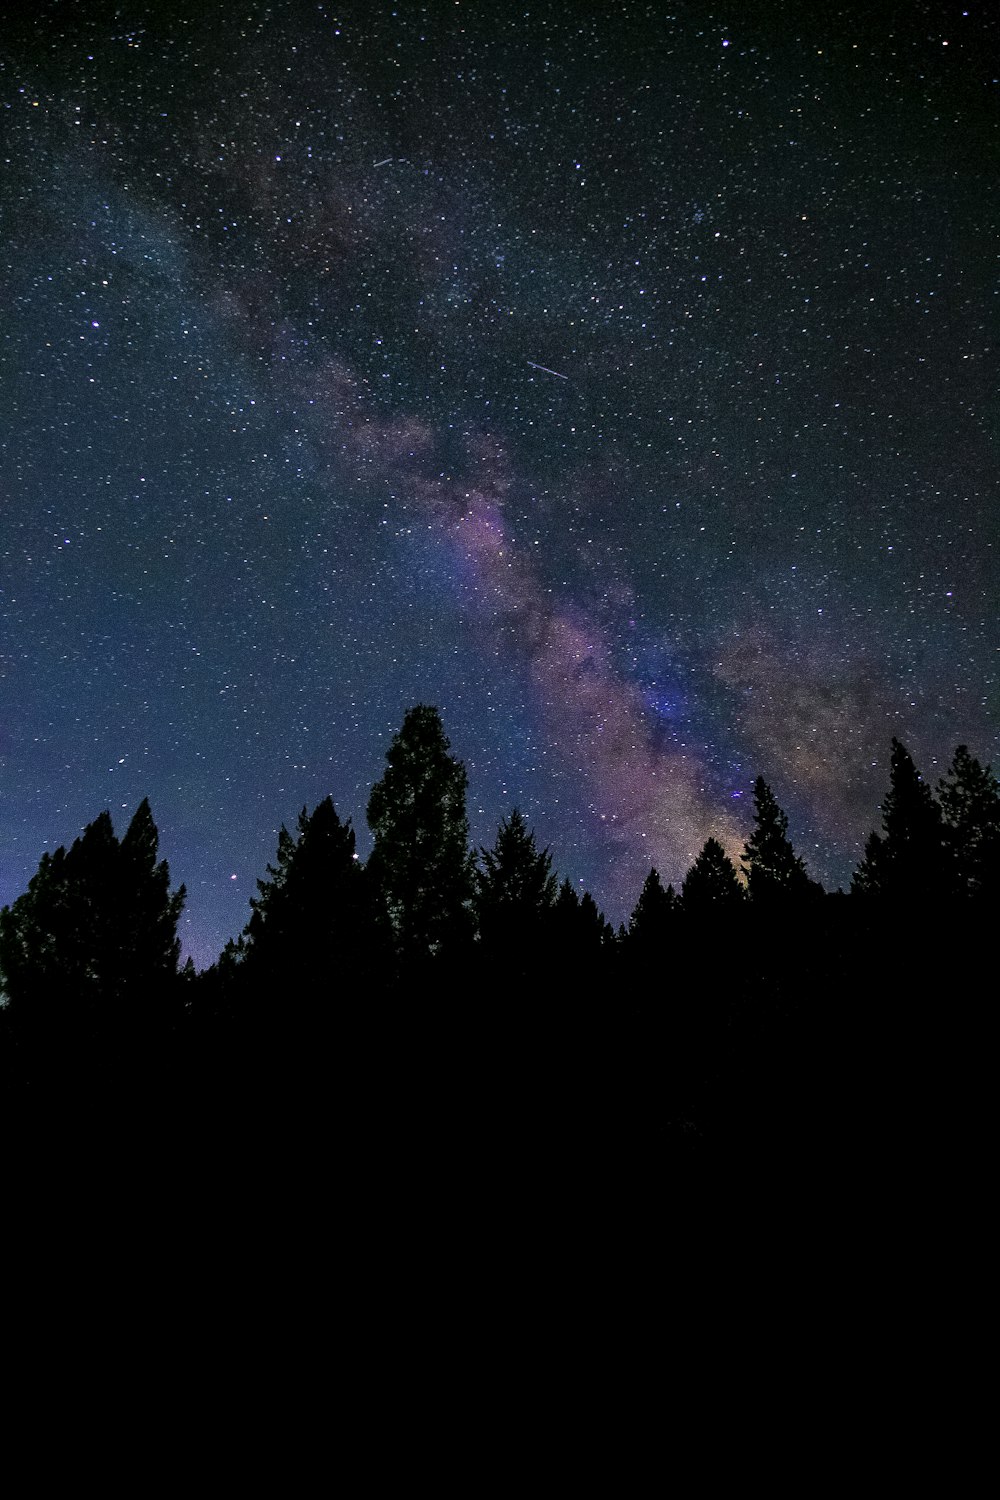 Silueta de árboles bajo el cielo azul con estrellas durante la noche